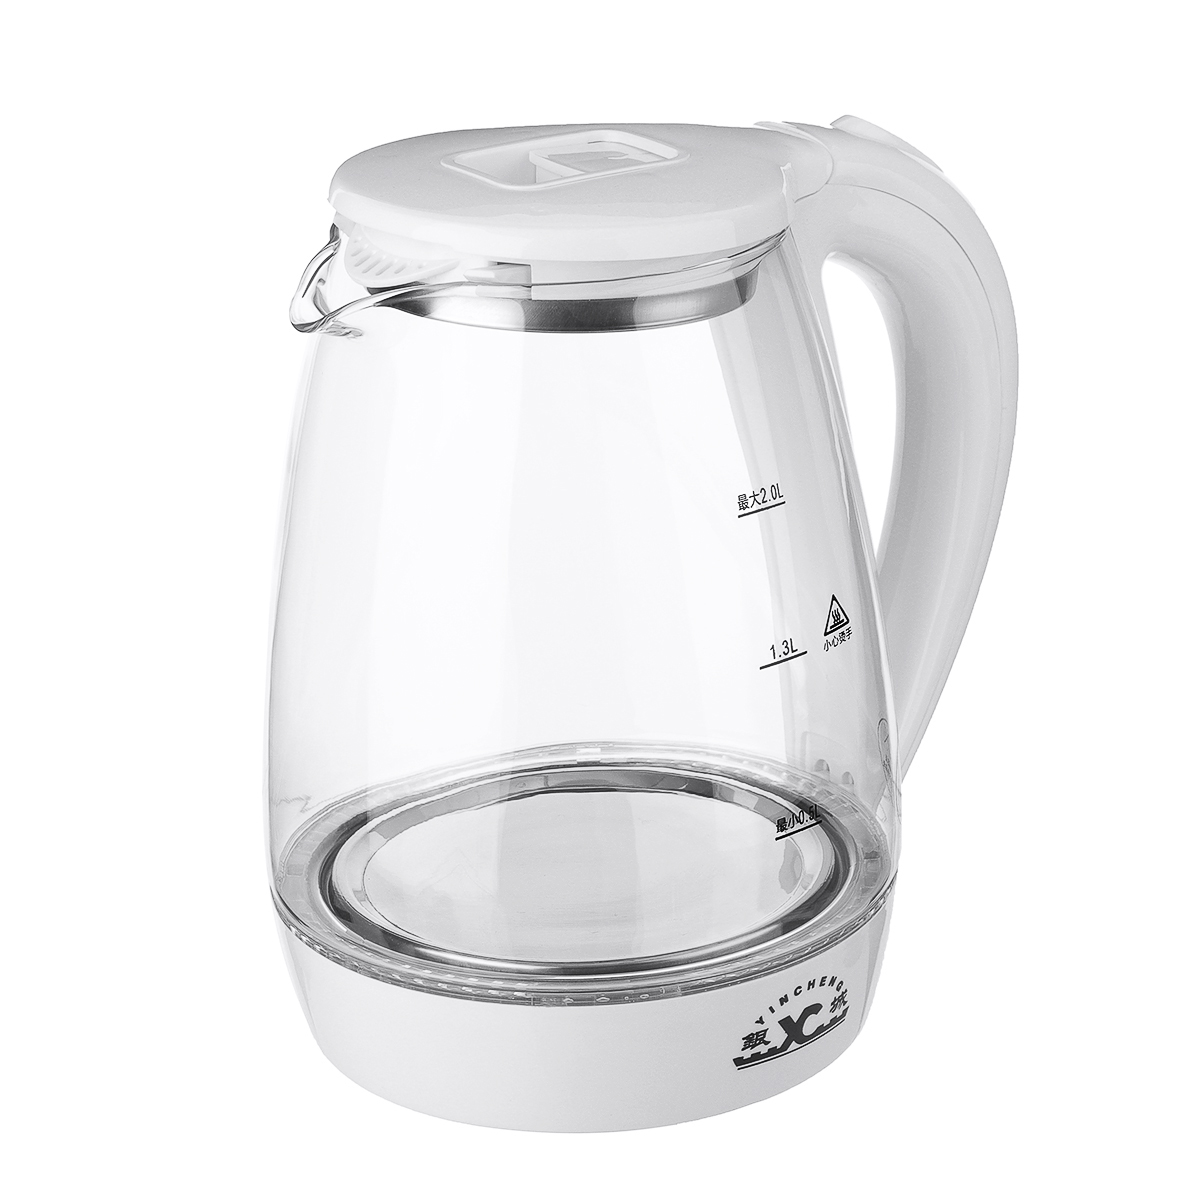 

Иньчэн 2-литровый электрический стеклянный чайник с водяной подсветкой Шнур Белый вареный чайник Домашняя кухня Инструмент